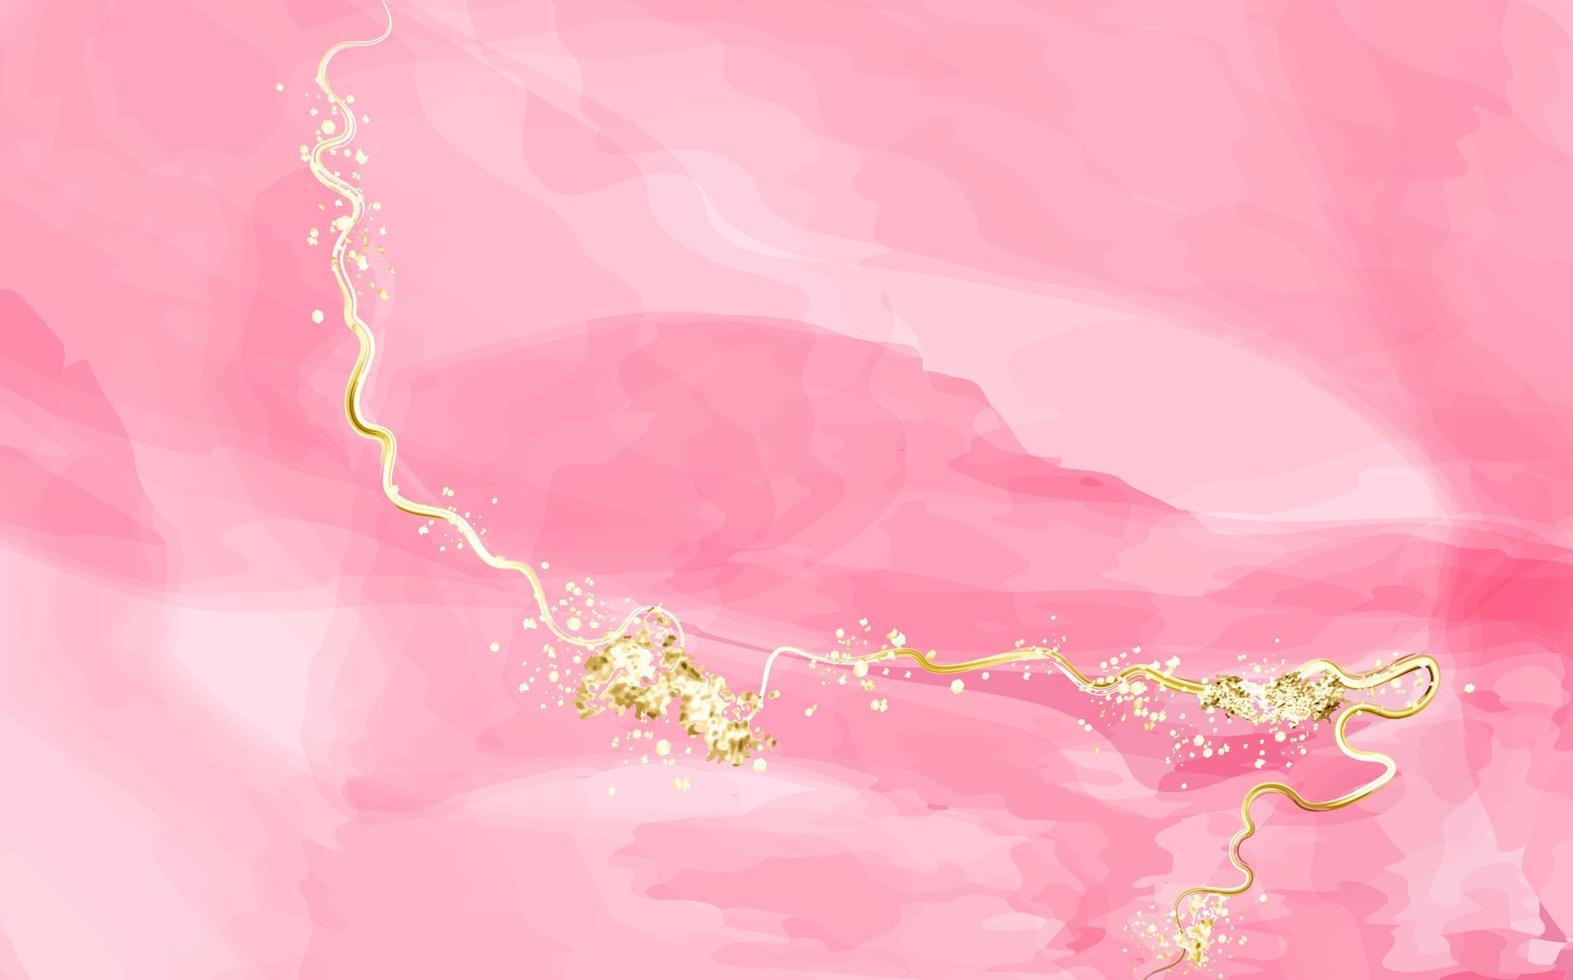 abstrakter rosa oder aprikosenfarbener aquarellhintergrund mit goldener textur. erröten flüssige malerei. frühlingshochzeitseinladung staubige rosen- oder schleierbeschaffenheit. Alkoholtinte. vektor